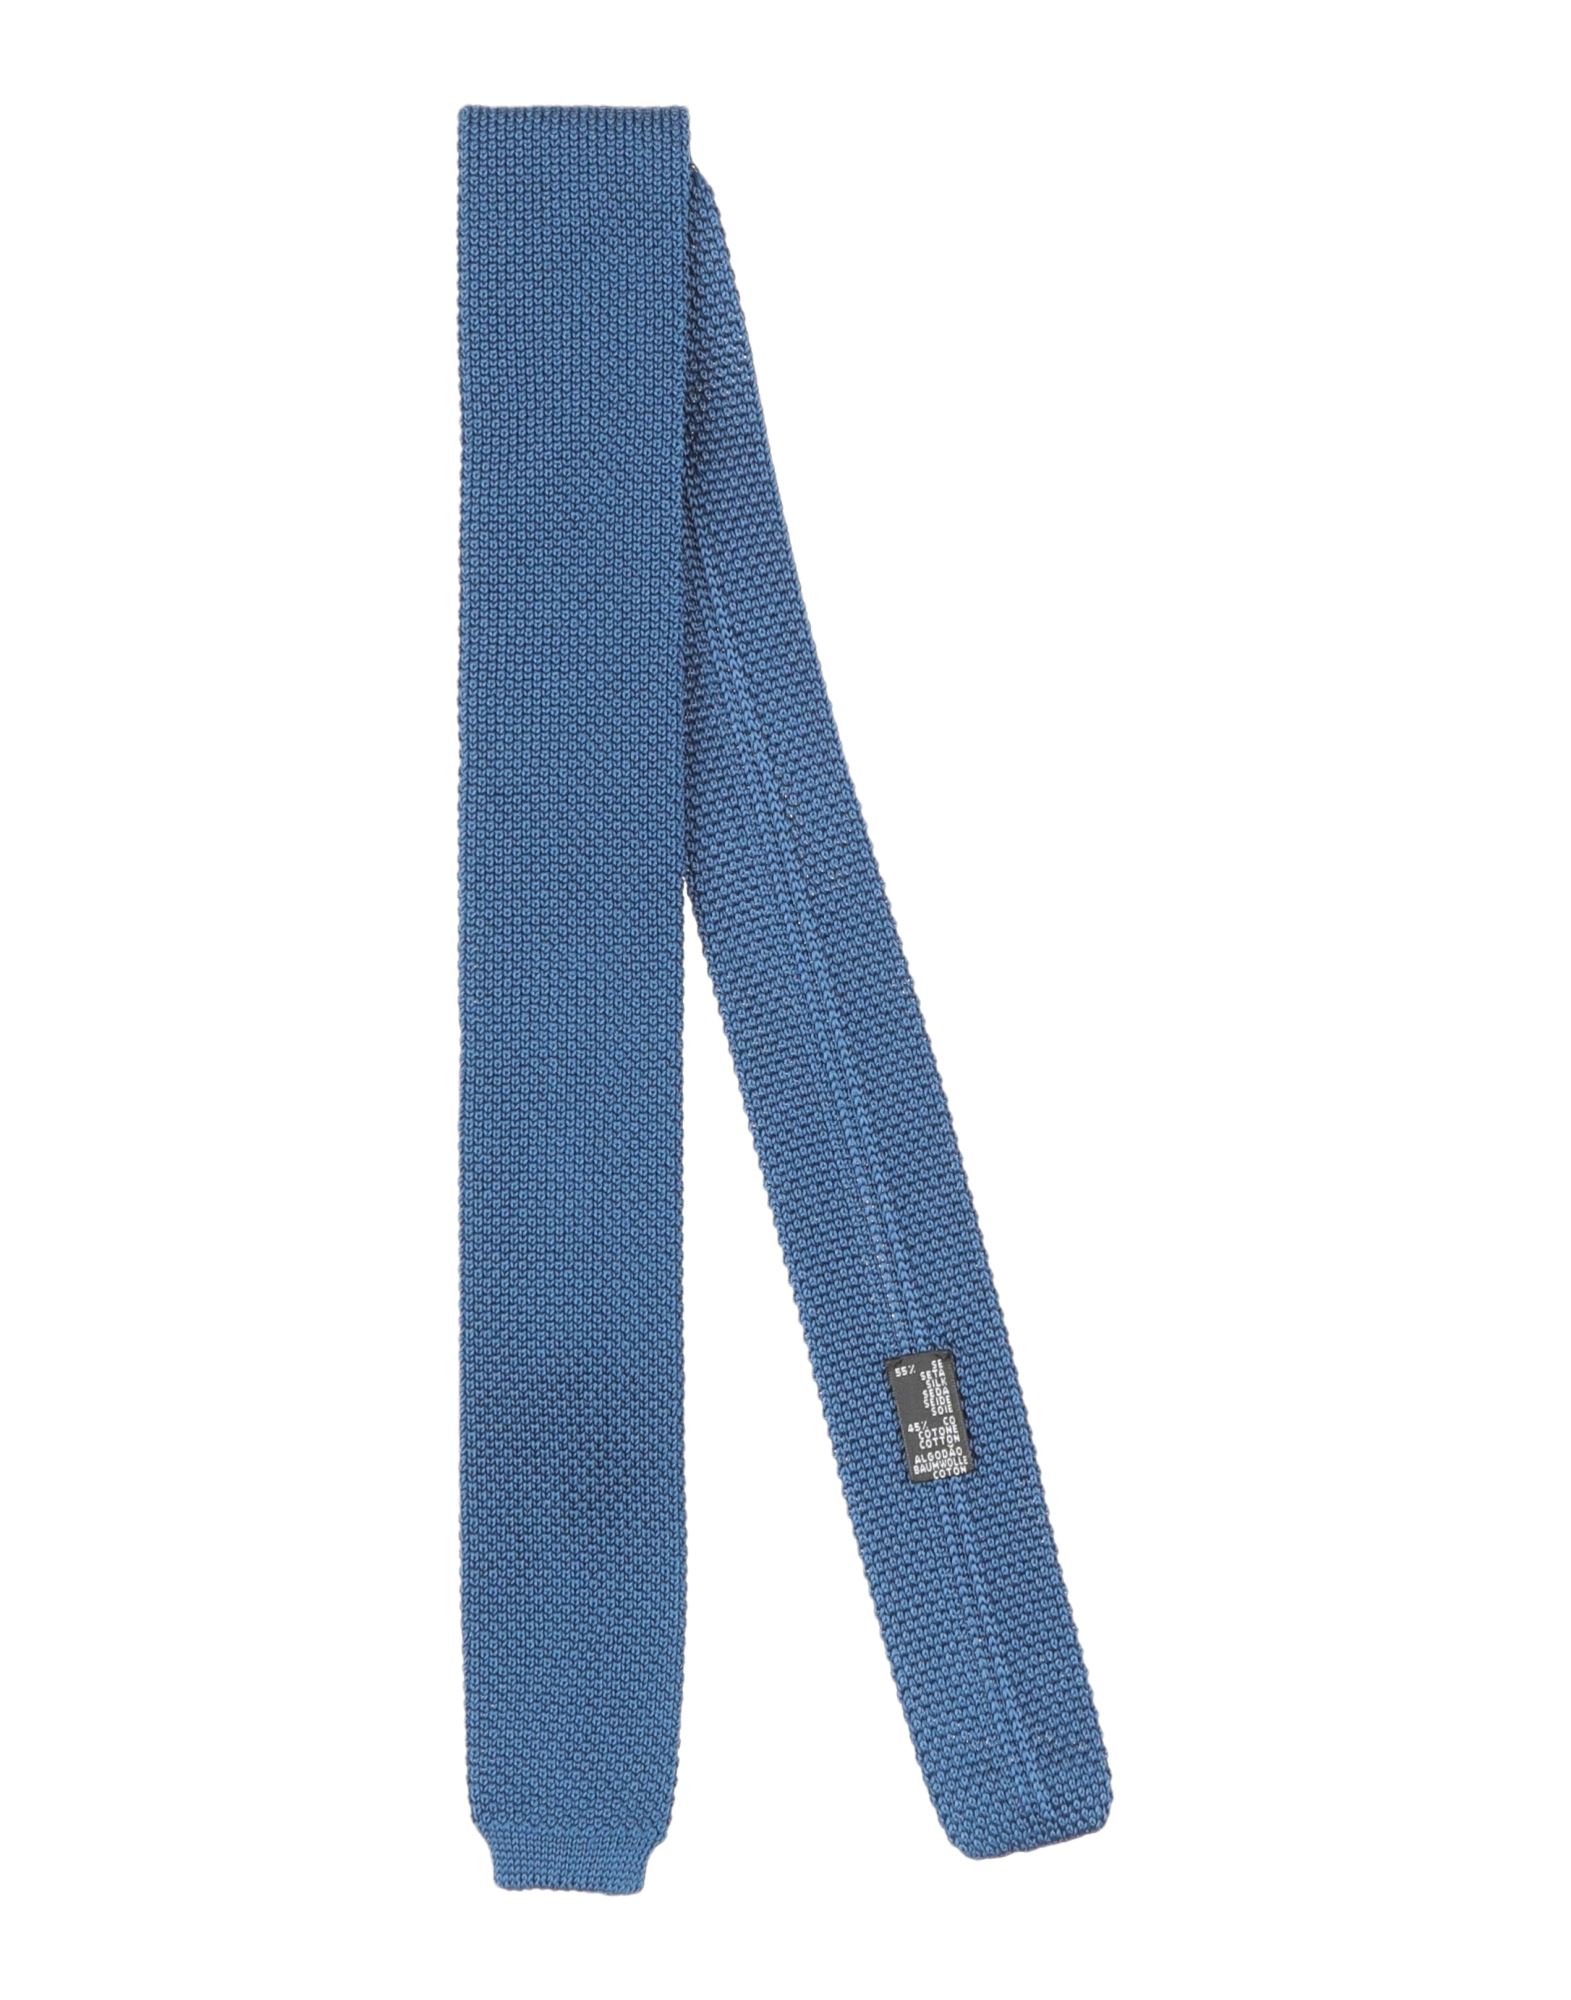 Fiorio Man Ties & Bow Ties Blue Size - Silk, Cotton